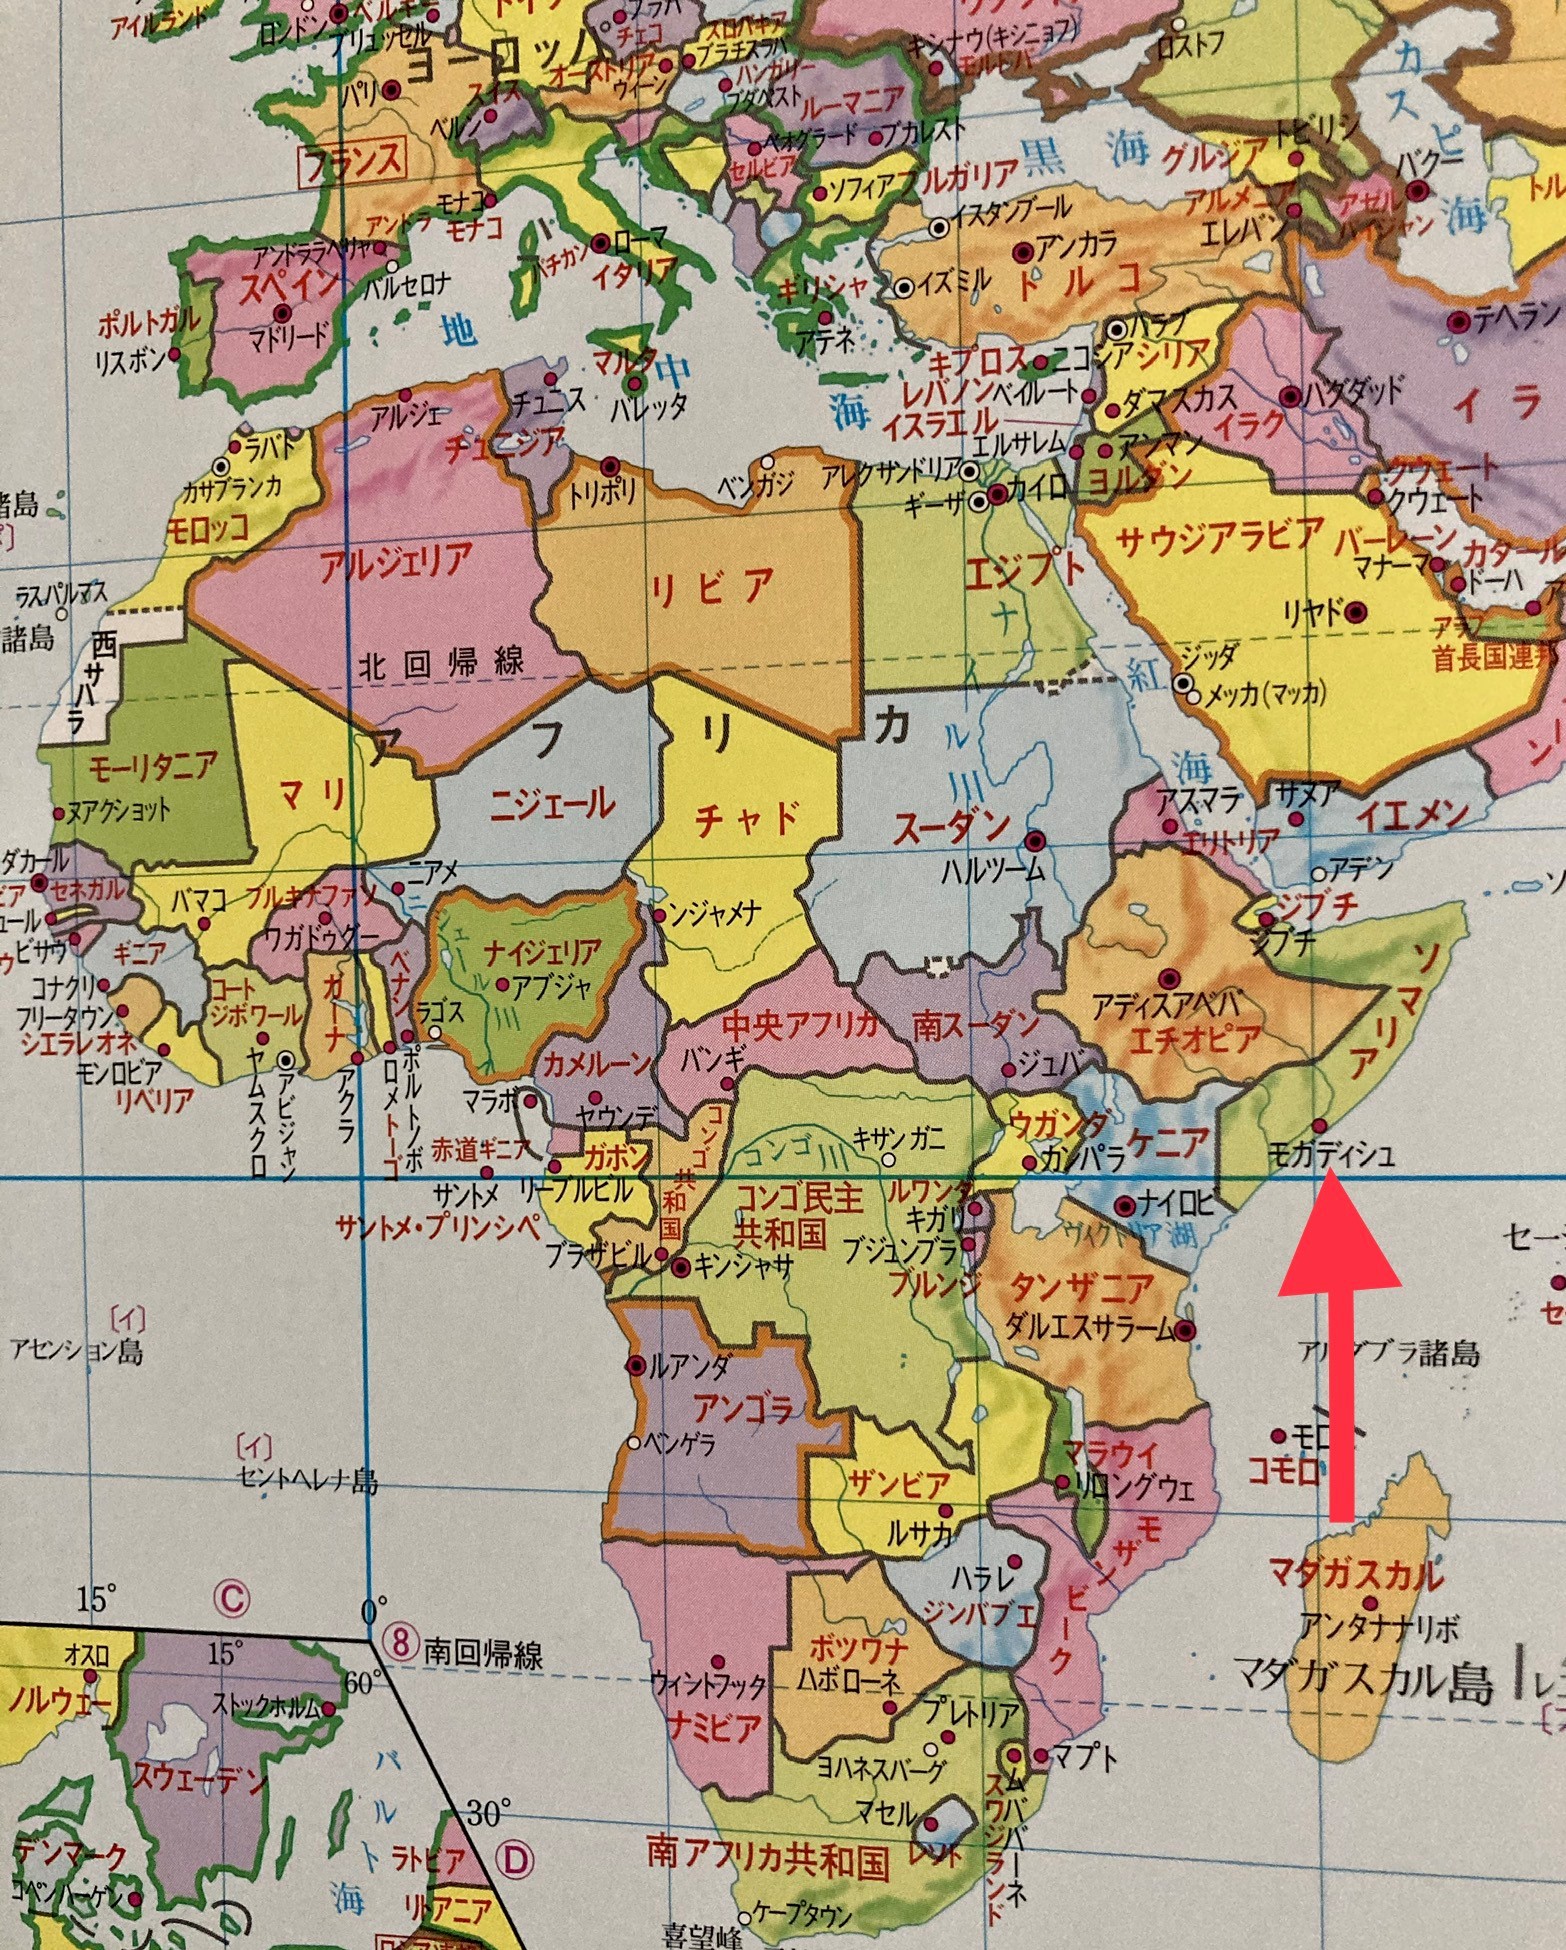 ソマリアの地図①